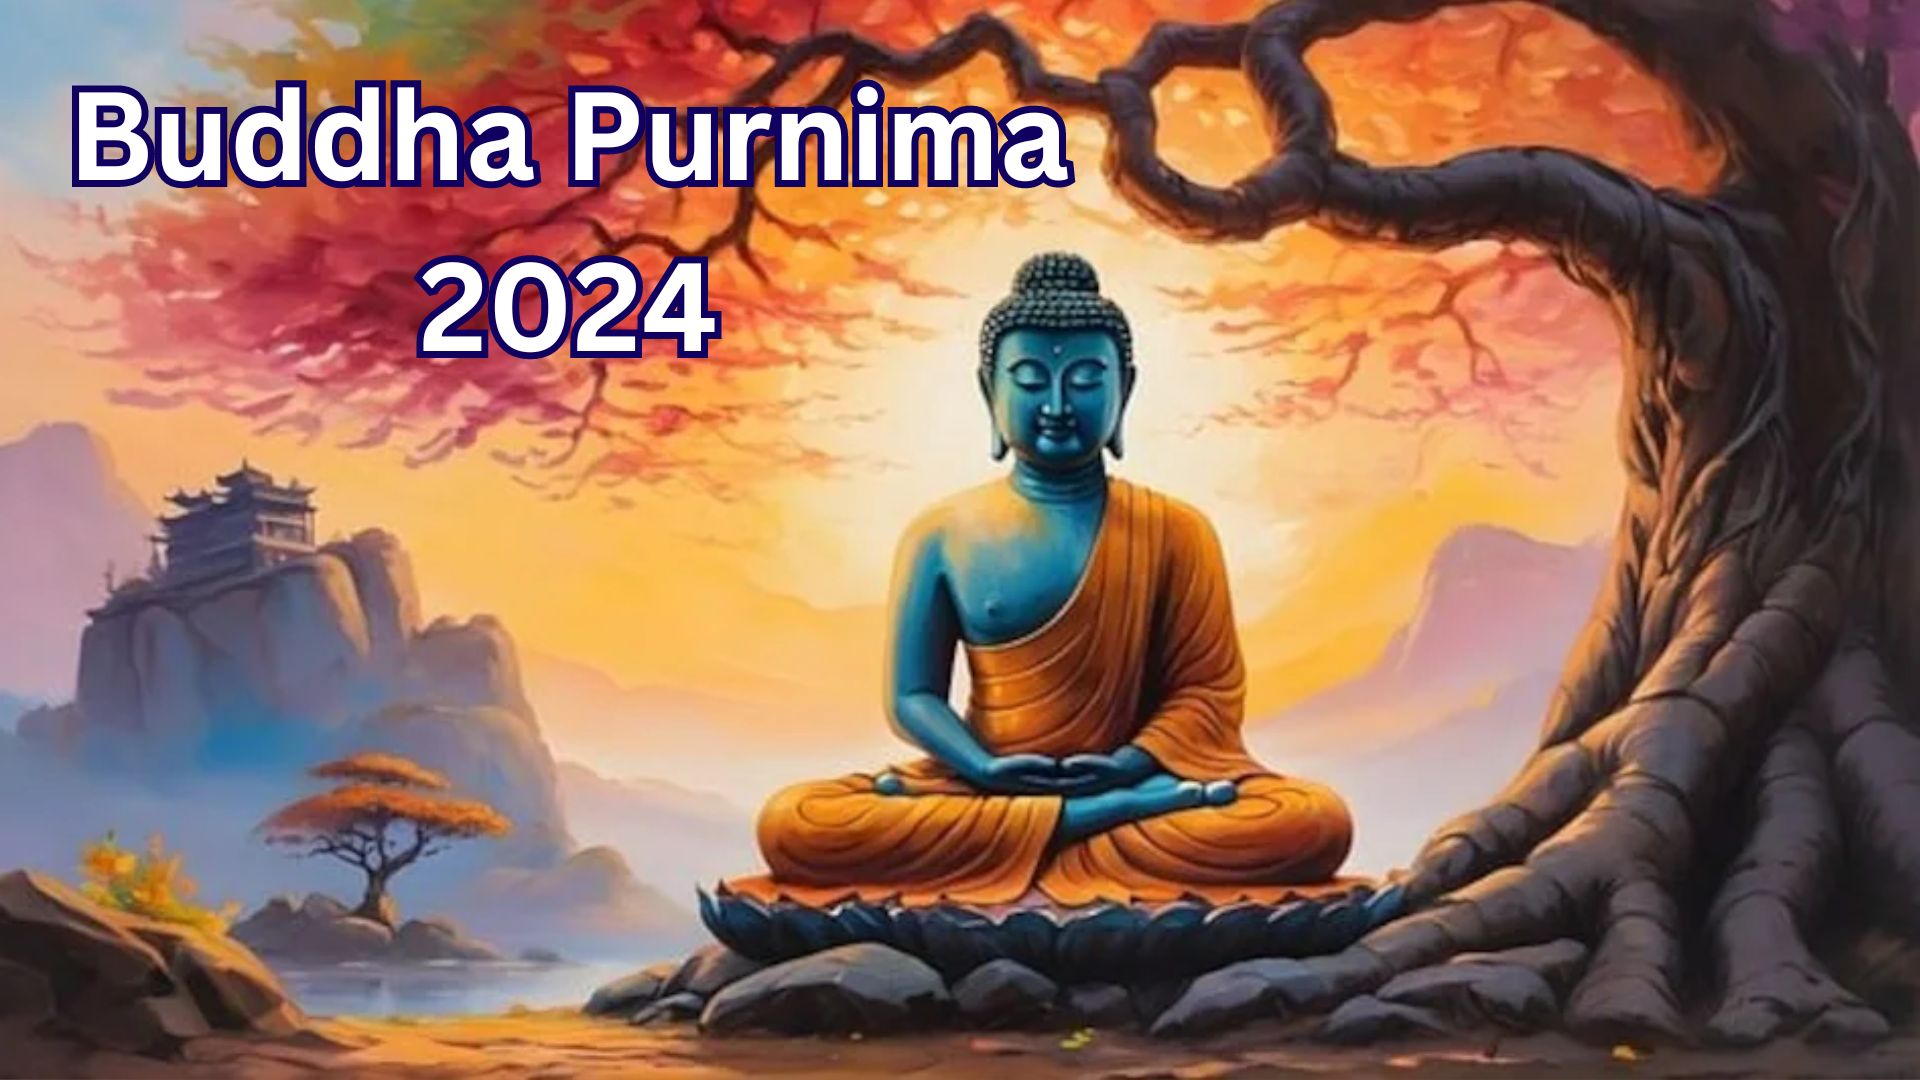 Buddha Purnima 2024: बुद्ध पूर्णिमा आज, जानिए इस दिन का महत्‍व और पूजा विधि